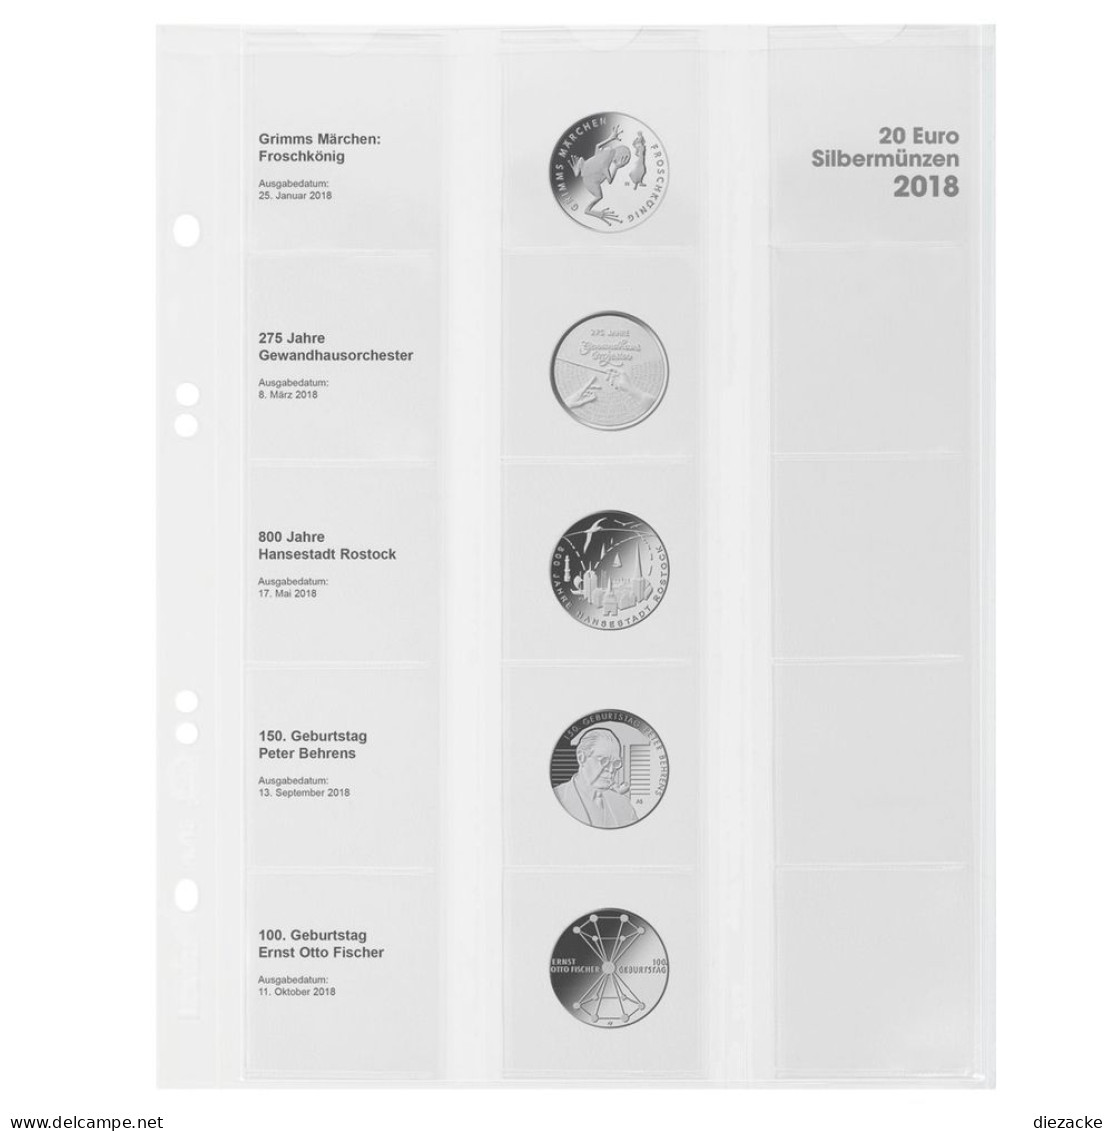 Lindner Vordruckblatt Publica M Für 20 Euro-Silbermünzen MU20E18 Neu - Zubehör